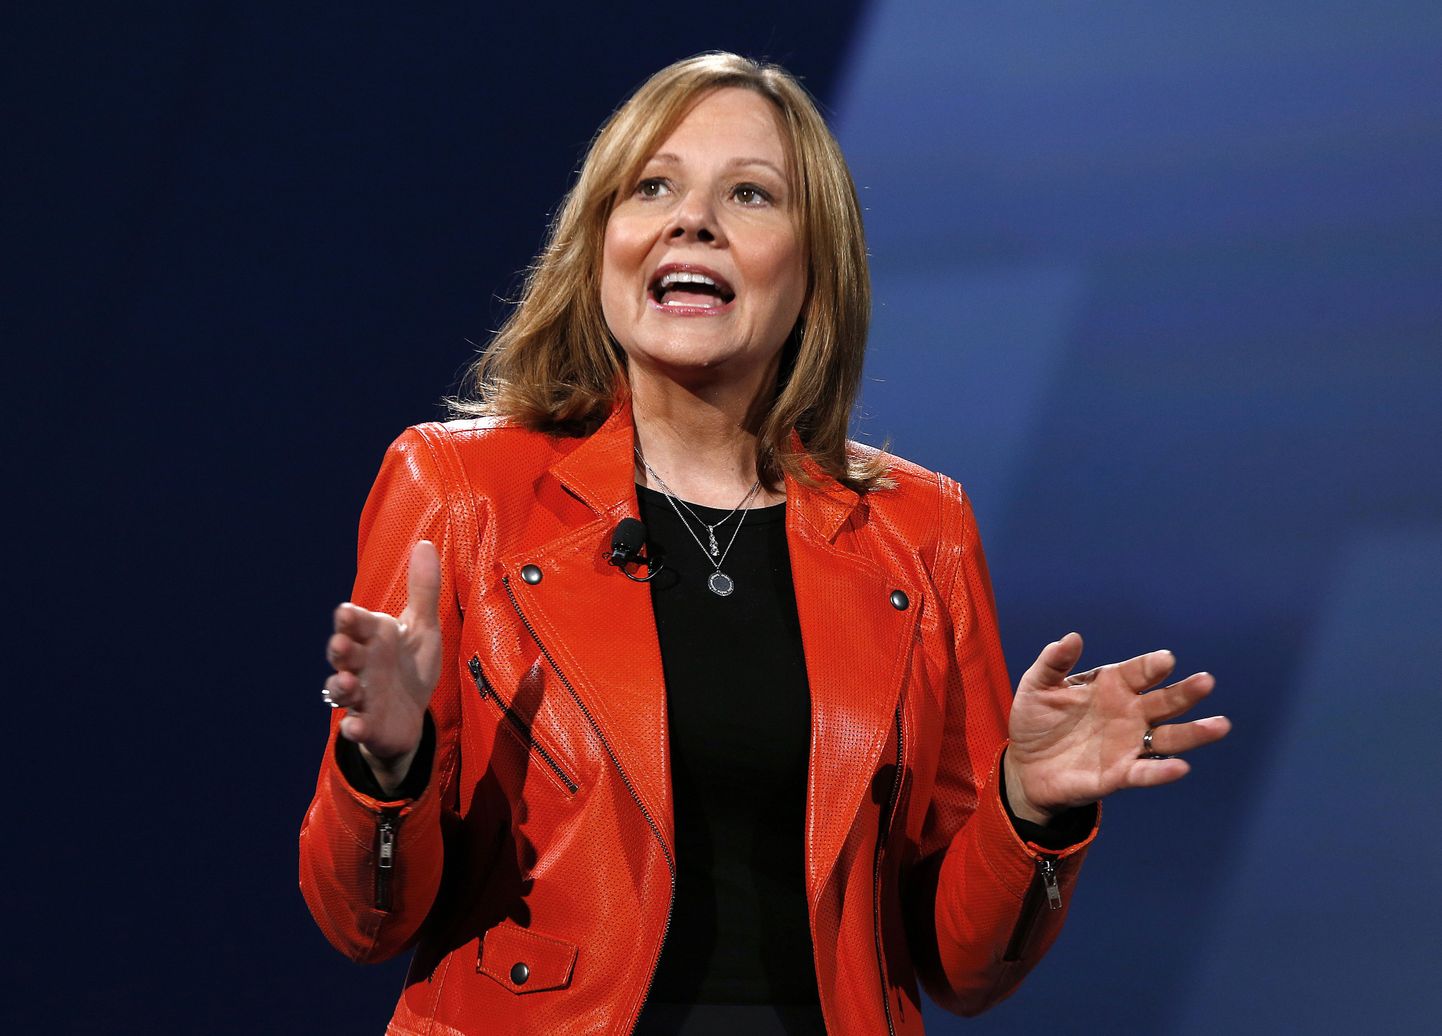 General Motorsi tegevjuht Mary Barra jõudsid Forbesi maailma mõjukaimate naisjuhtide hulgas viiendale kohale.